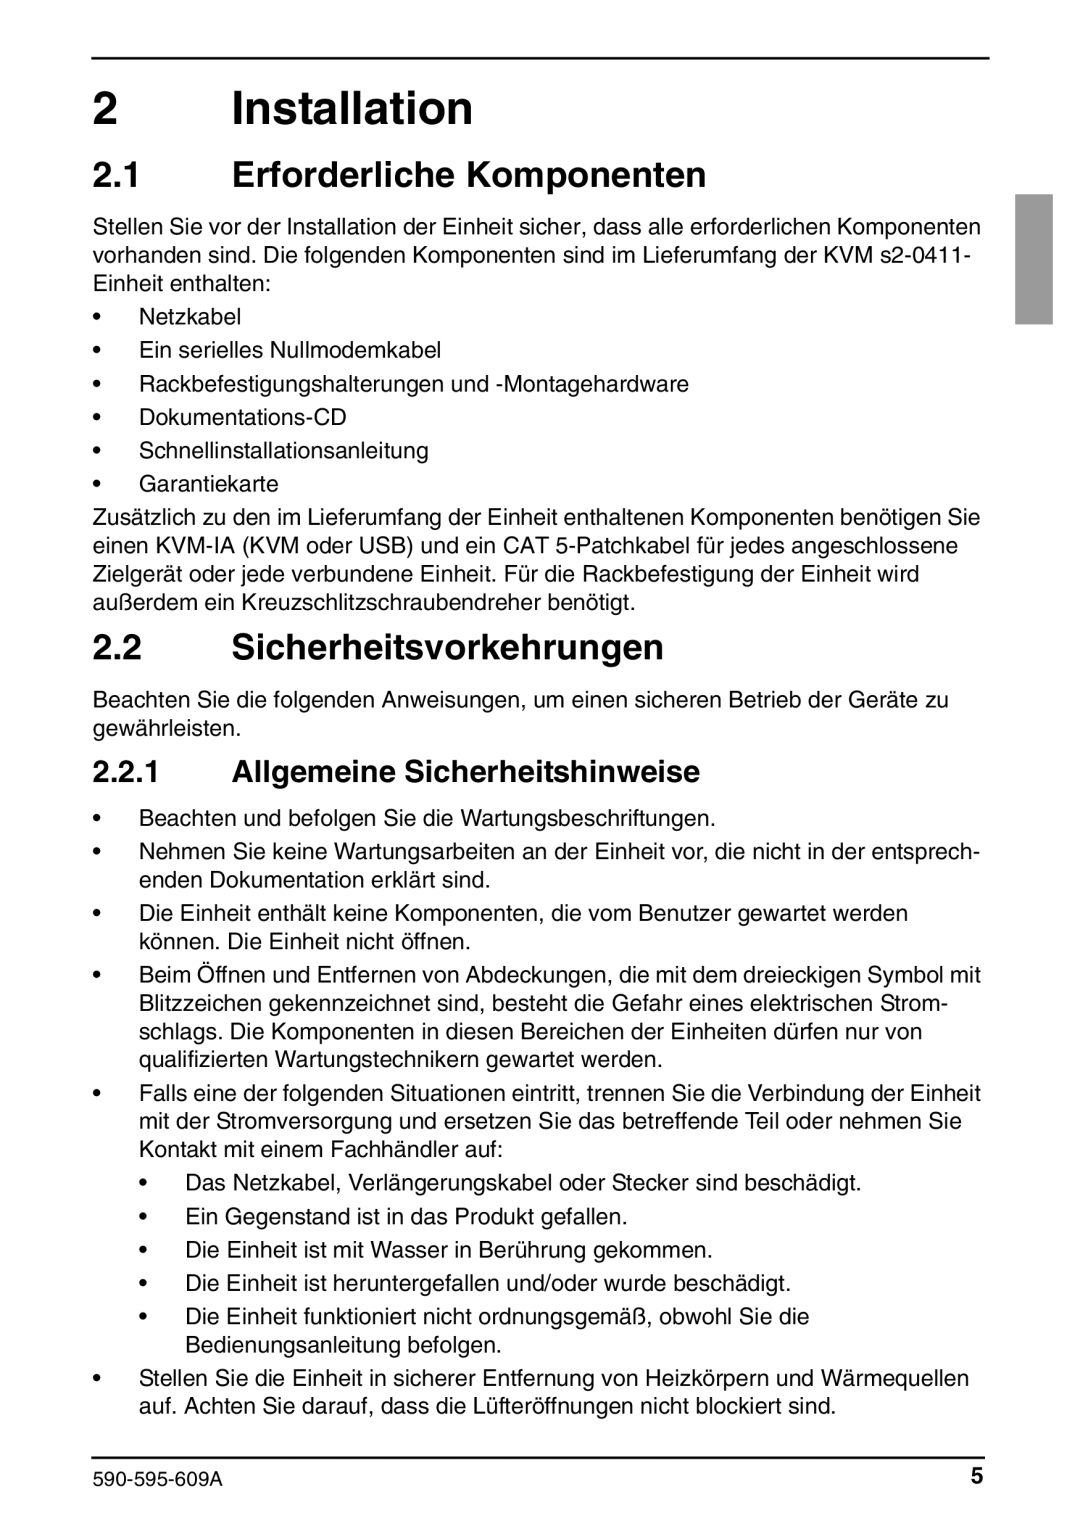 Siemens KVM s2-0411 manual Erforderliche Komponenten, Sicherheitsvorkehrungen, Allgemeine Sicherheitshinweise 